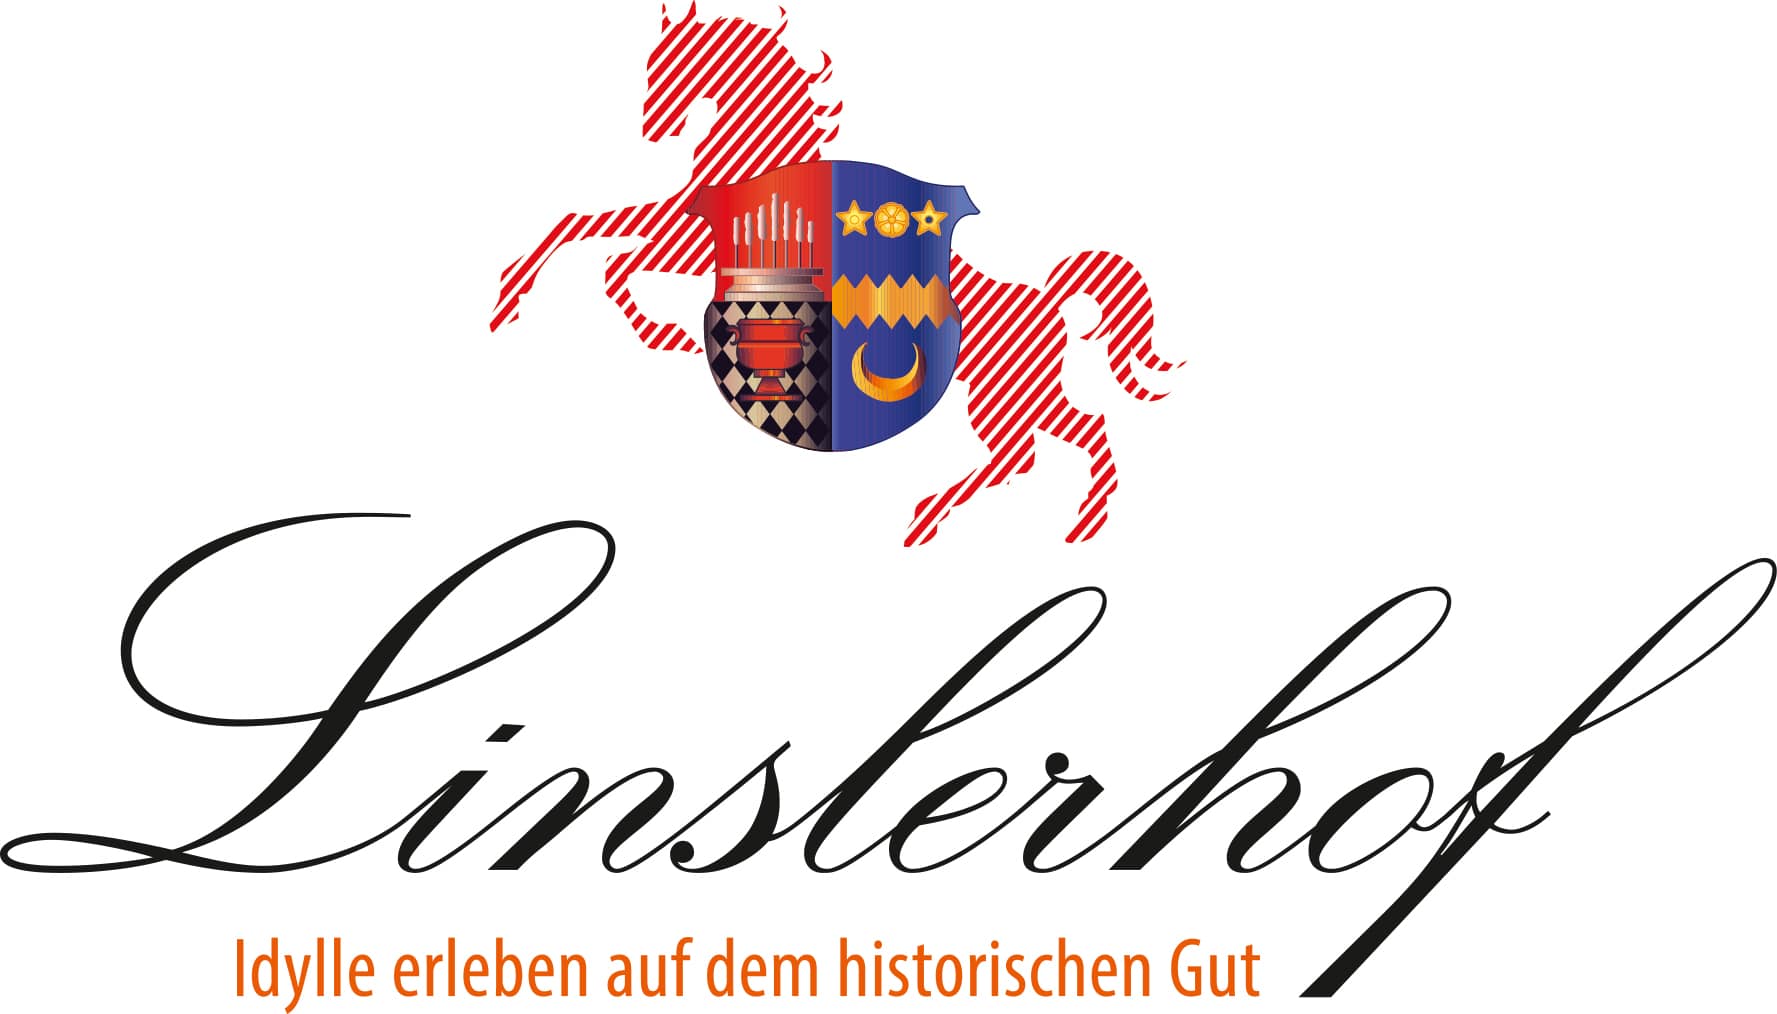 Der Linslerhof – Hotel, Restaurant, Events & Natur